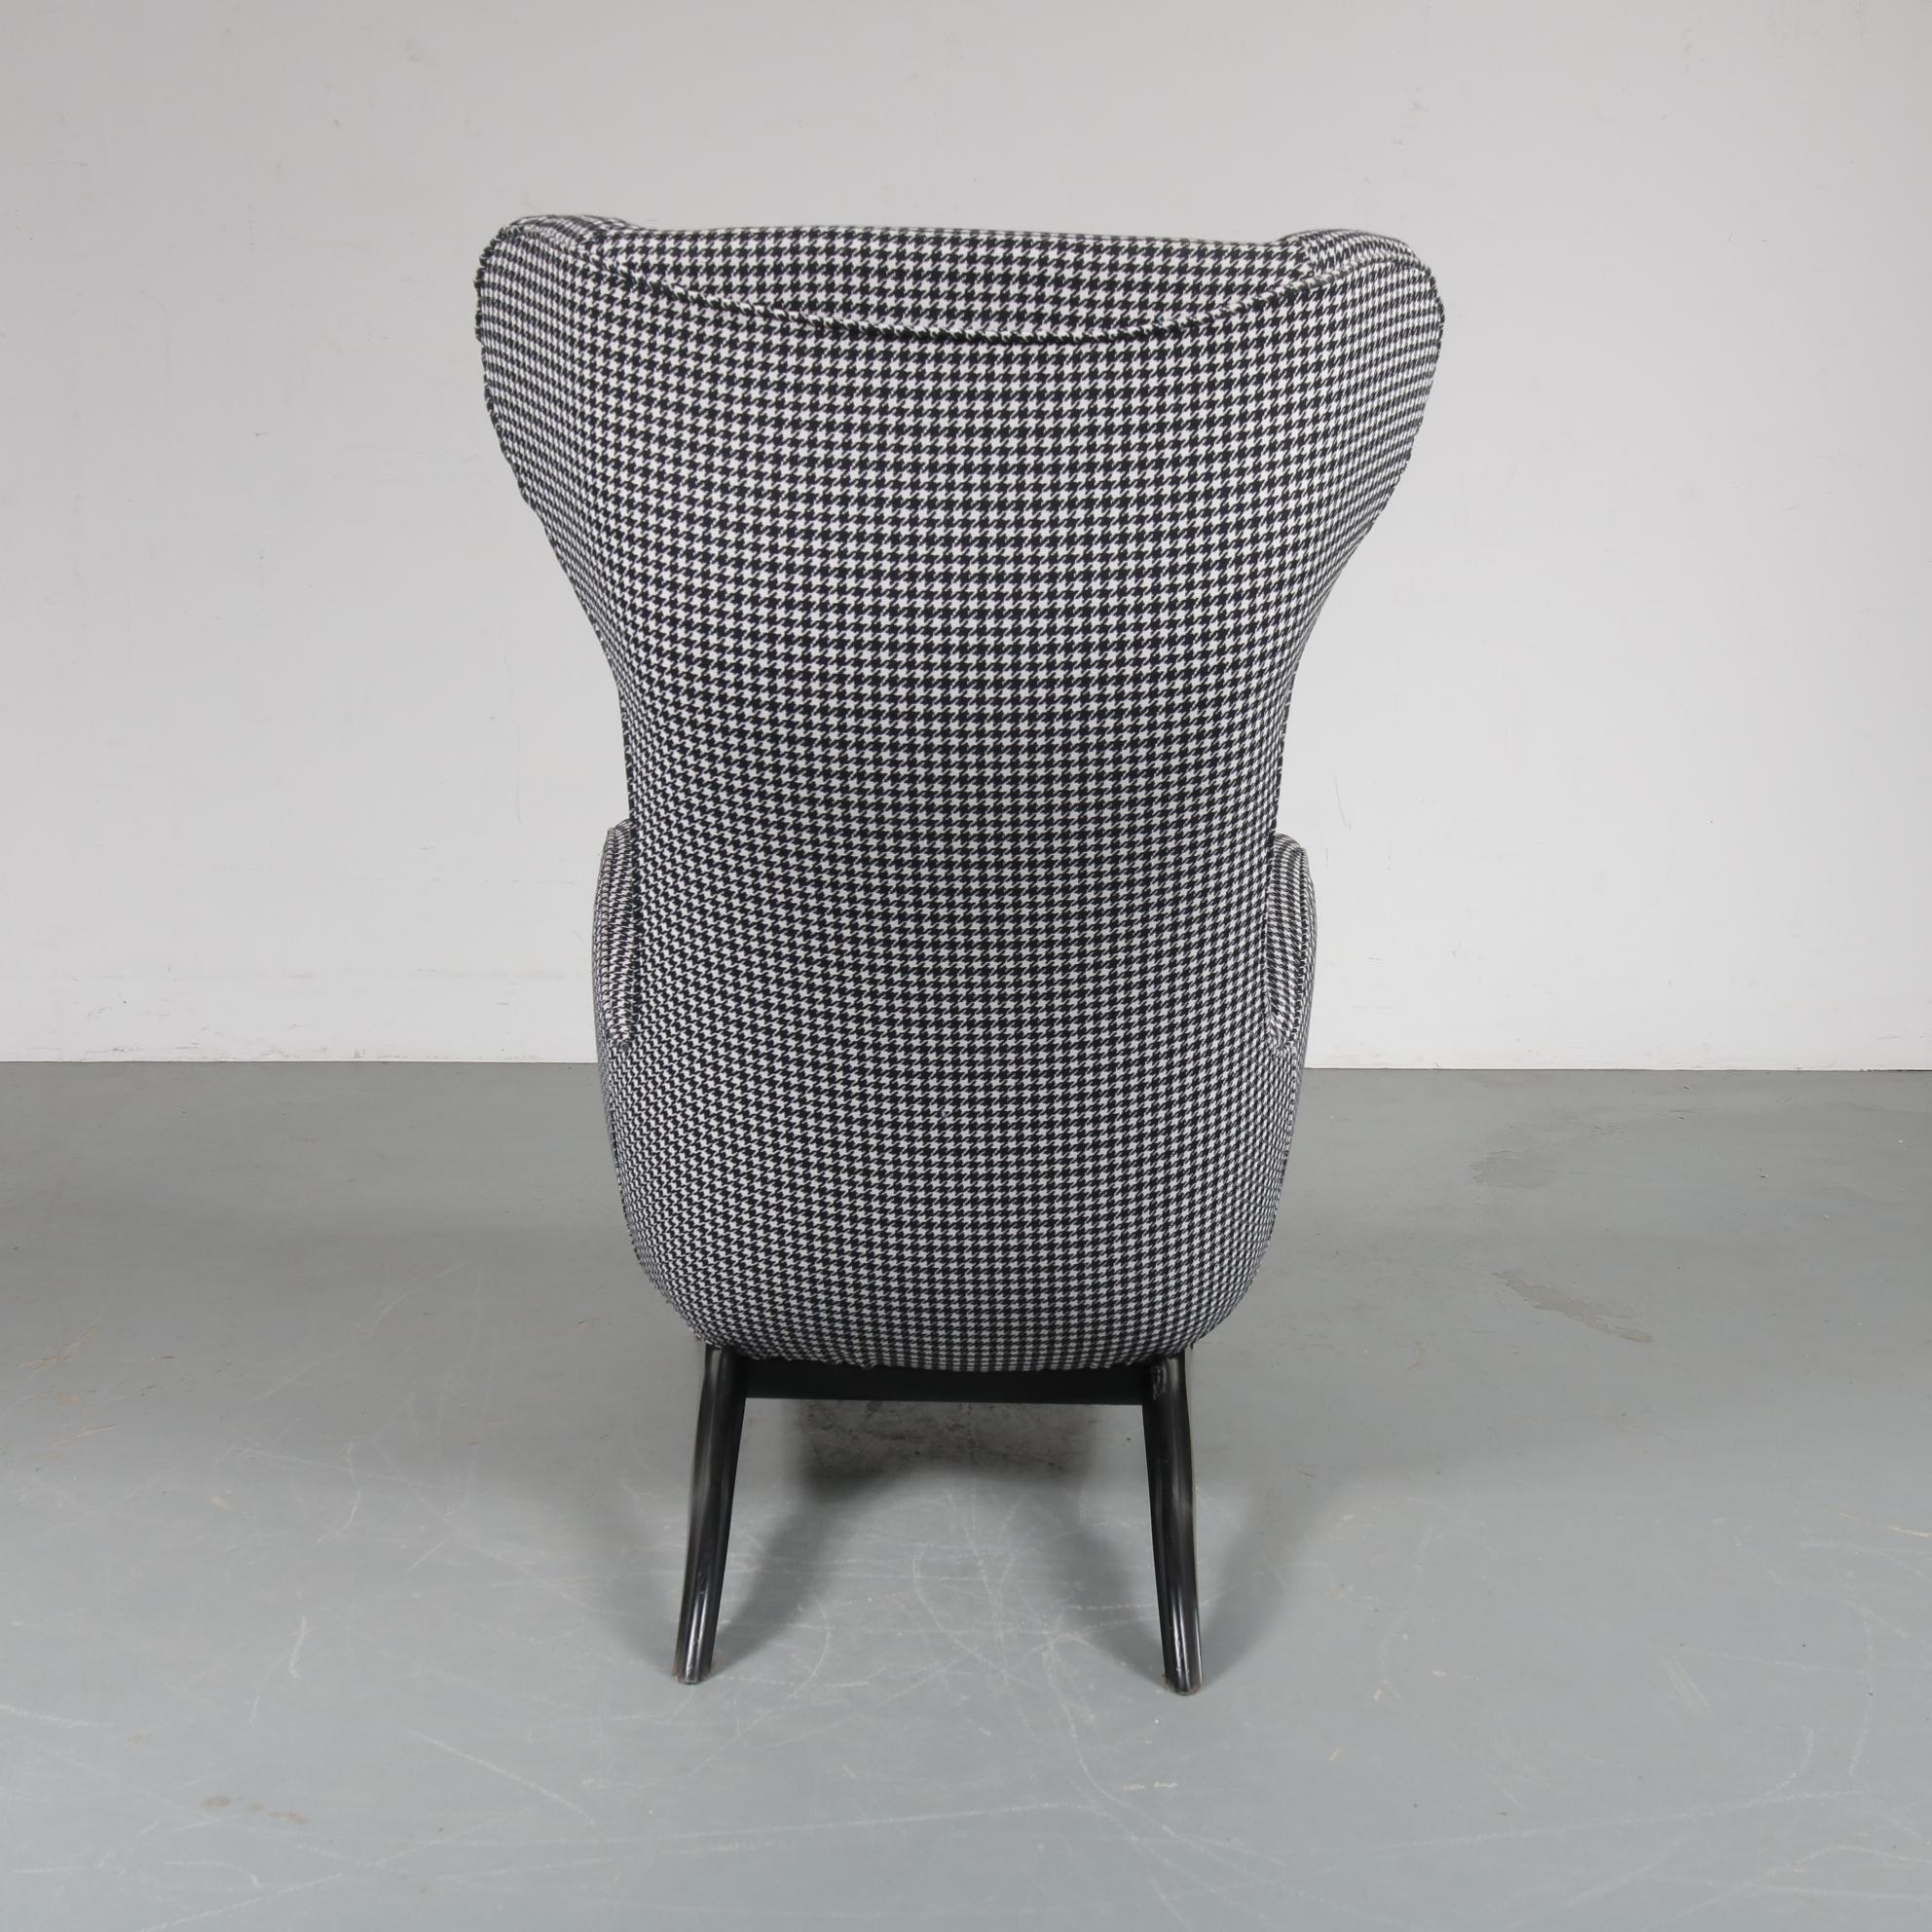 20th Century Carlo Mollino “Ardea” Chair for Zanotta, Italy, 1980